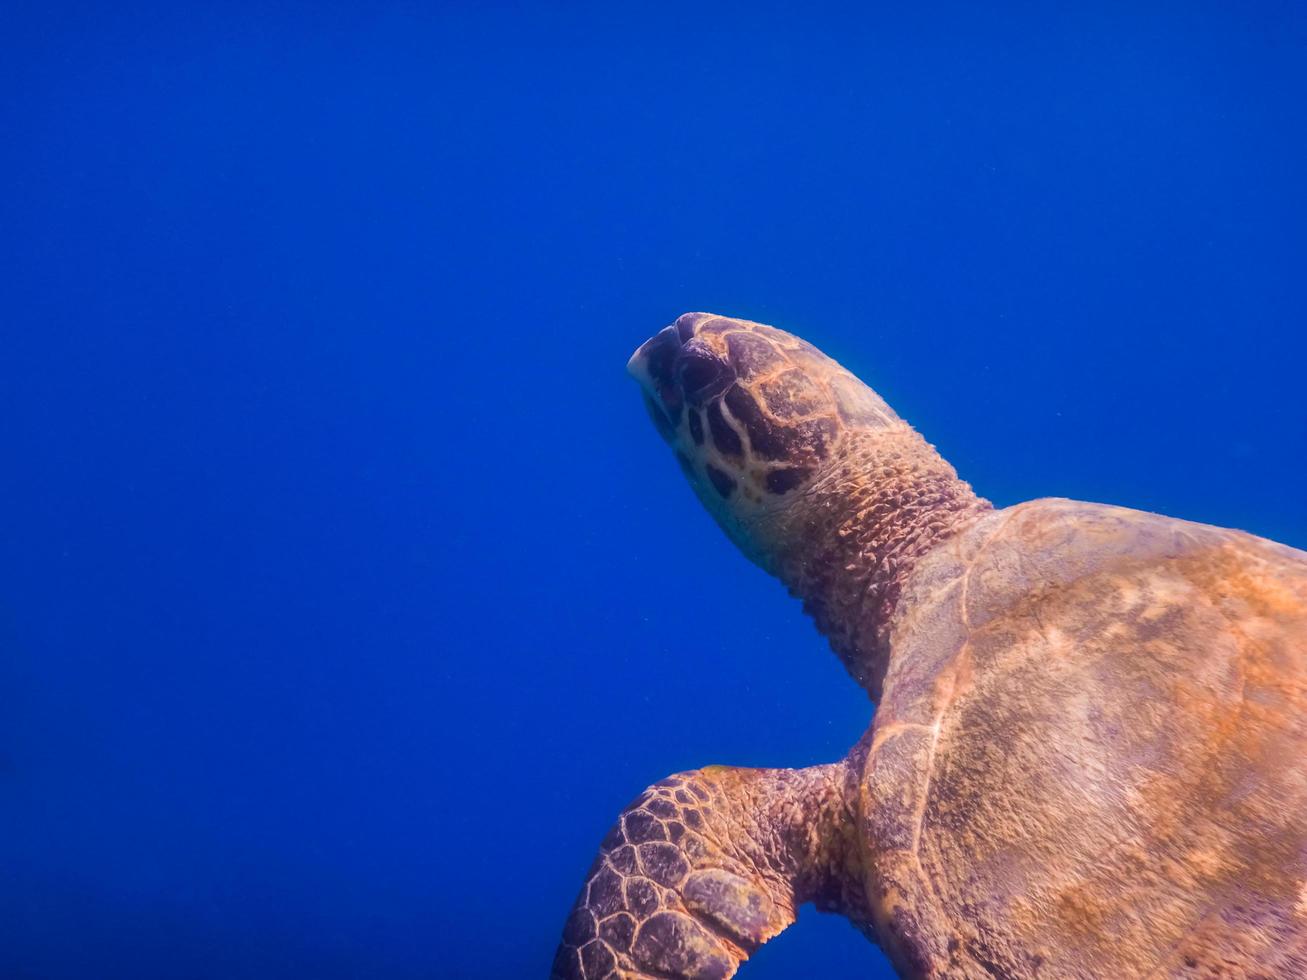 tartaruga marinha verde em águas azuis profundas da vista do retrato do mar vermelho foto